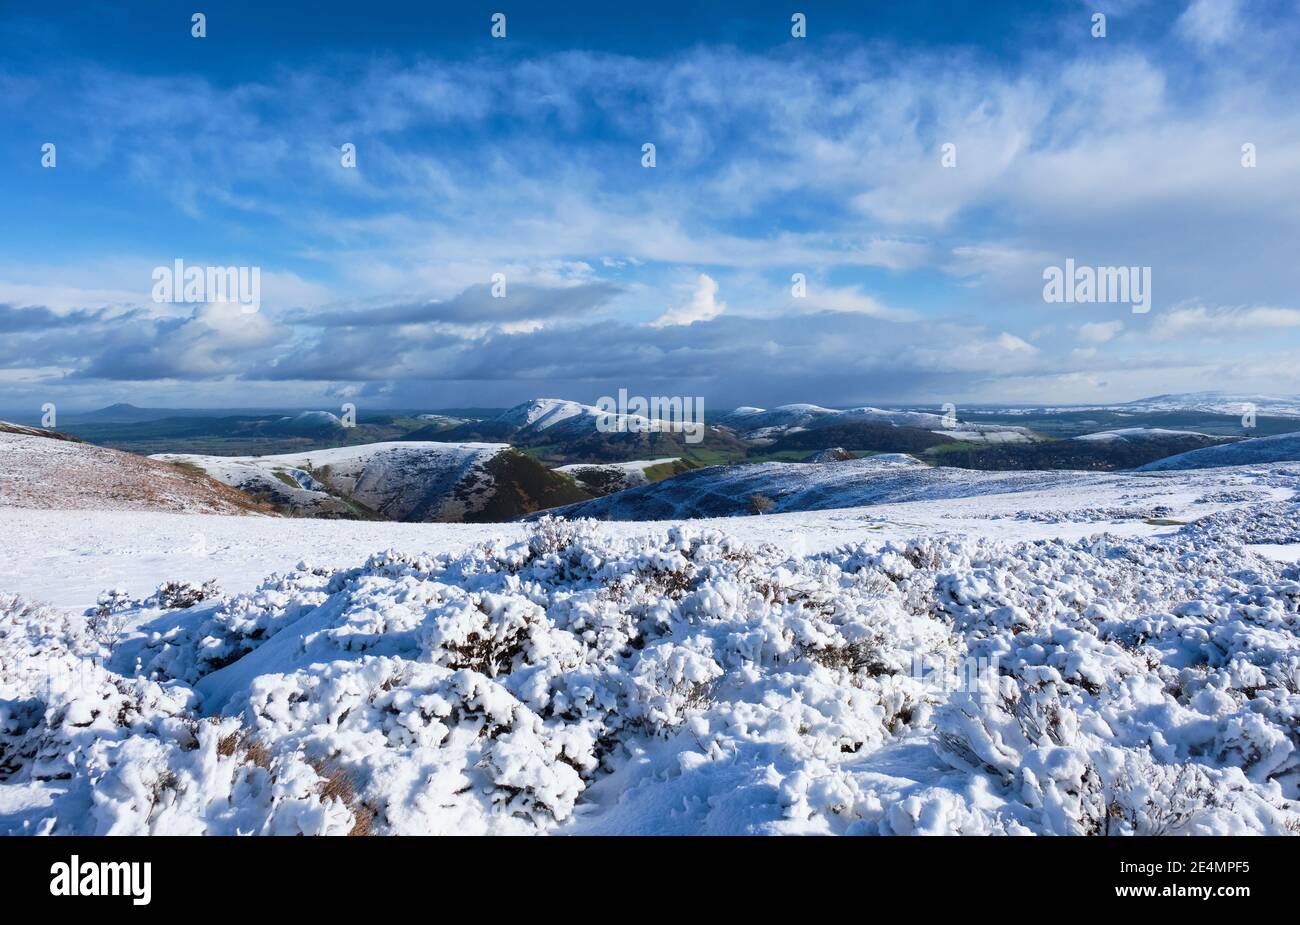 Il Wrekin, il Lawley, caer Caradoc, Hope Bowdler Hill e Brown Clee collina nella neve, visto dal Long Mynd, Chiesa Stretton, Shropshire Foto Stock